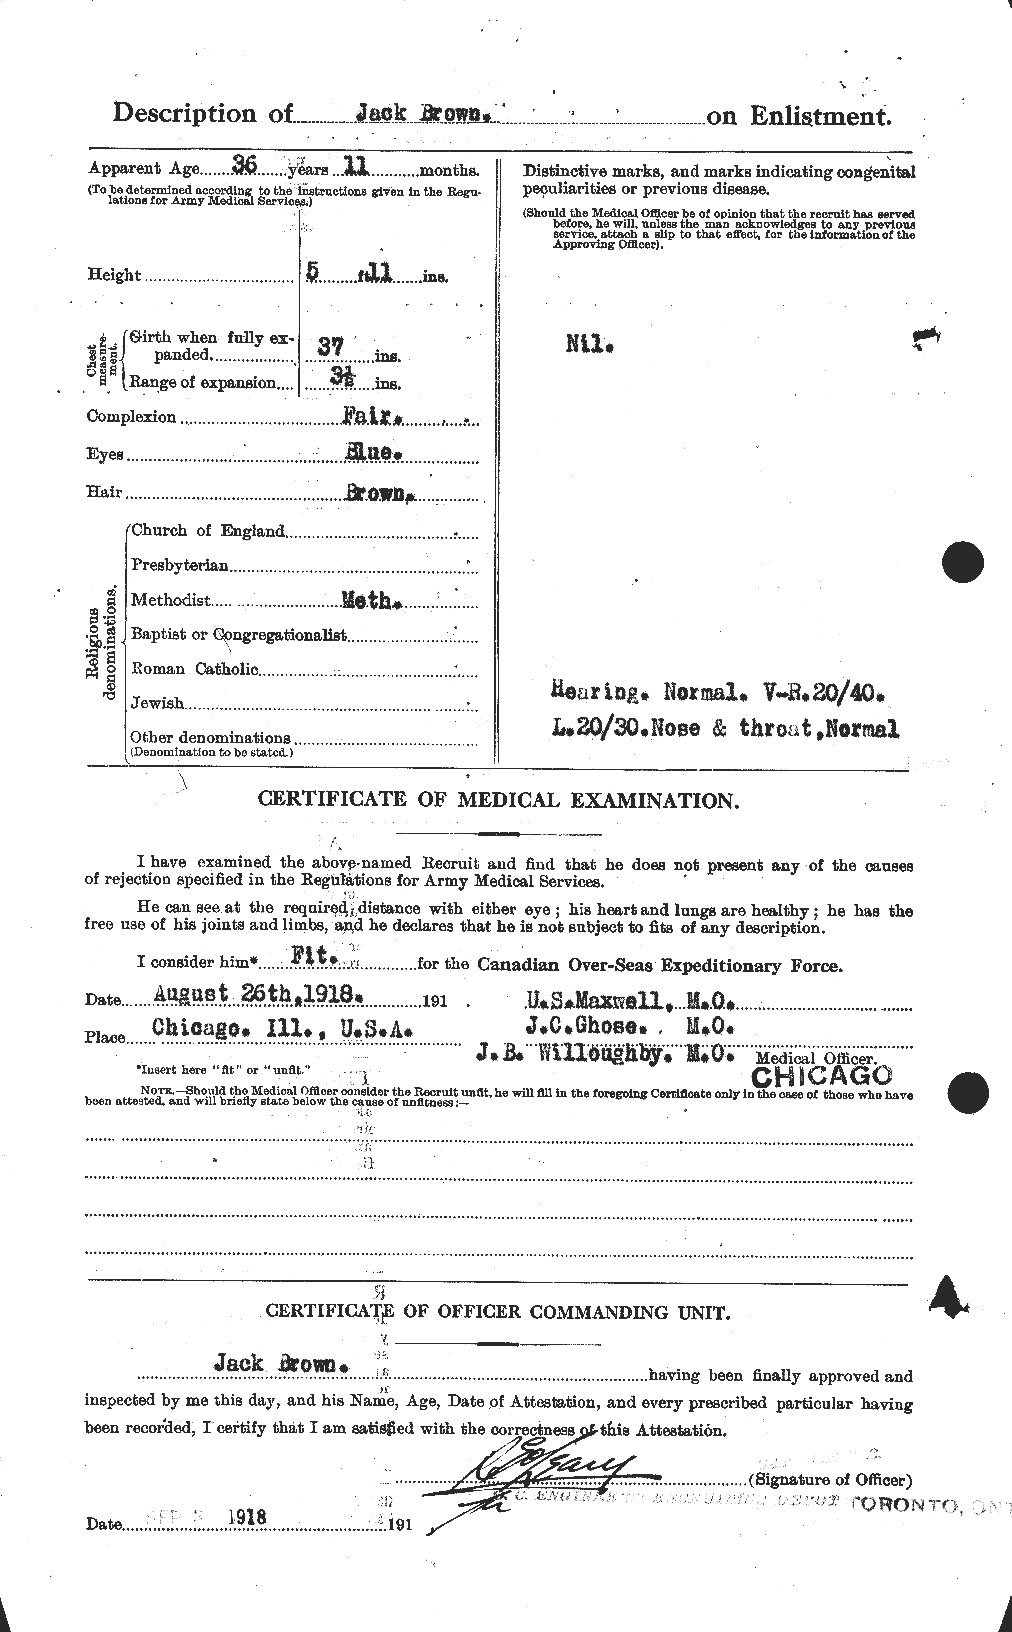 Dossiers du Personnel de la Première Guerre mondiale - CEC 269716b